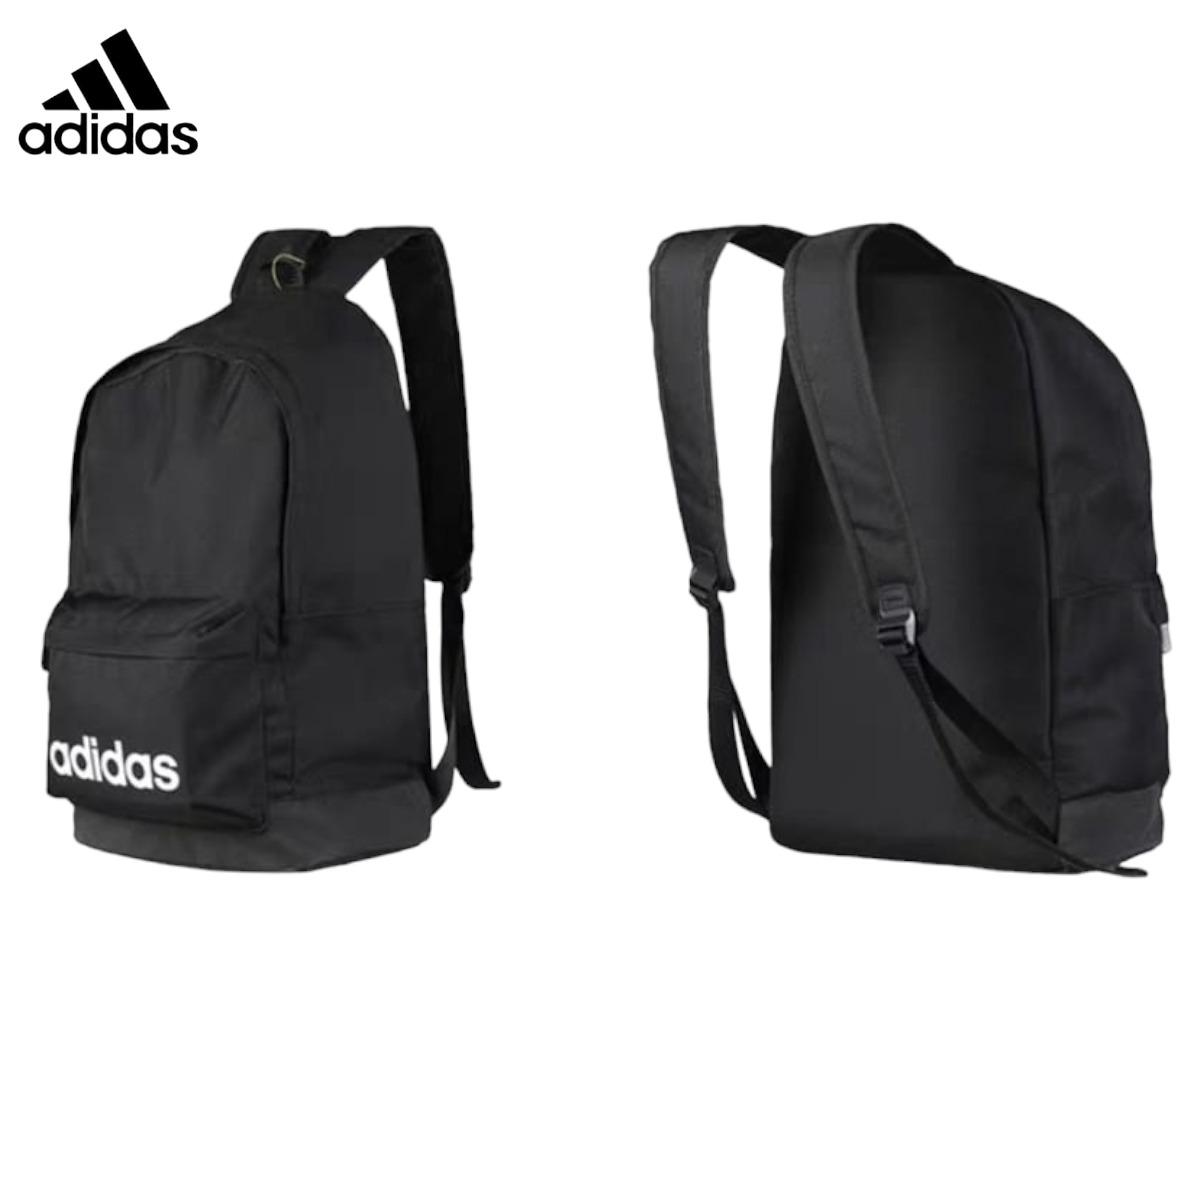 Adidas-UNISEX-classic-BackPack-Extra-Large-FL3716-3.jpg